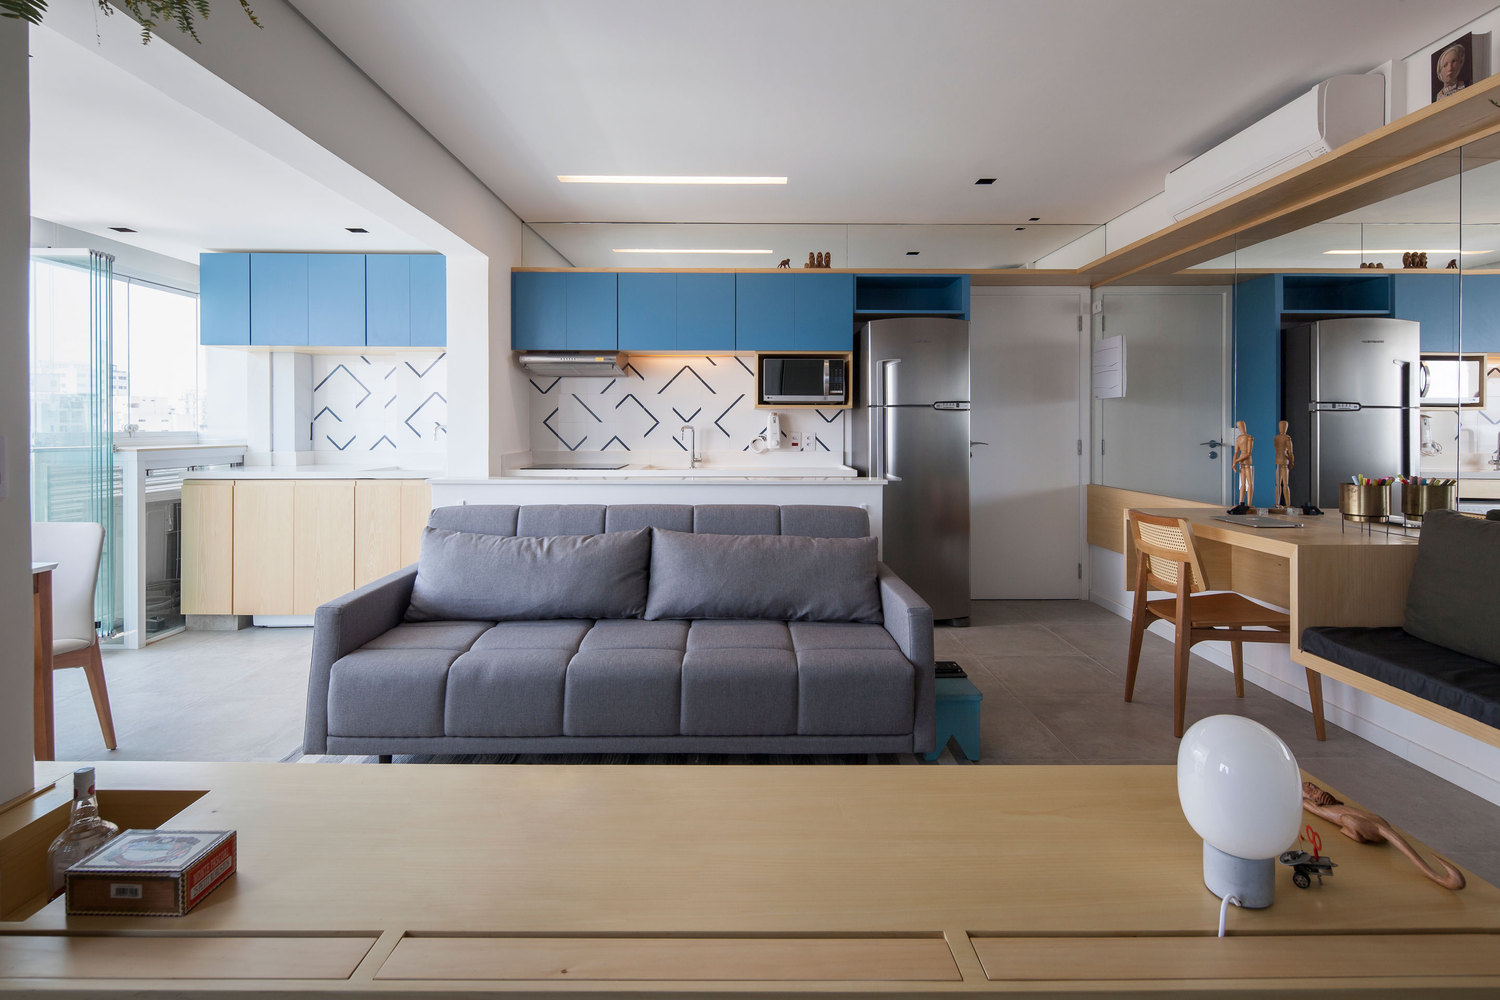 Khu vực phòng khách thiết kế tại vị trí trung tâm căn hộ, với chiếc ghế sofa màu xám êm ái.